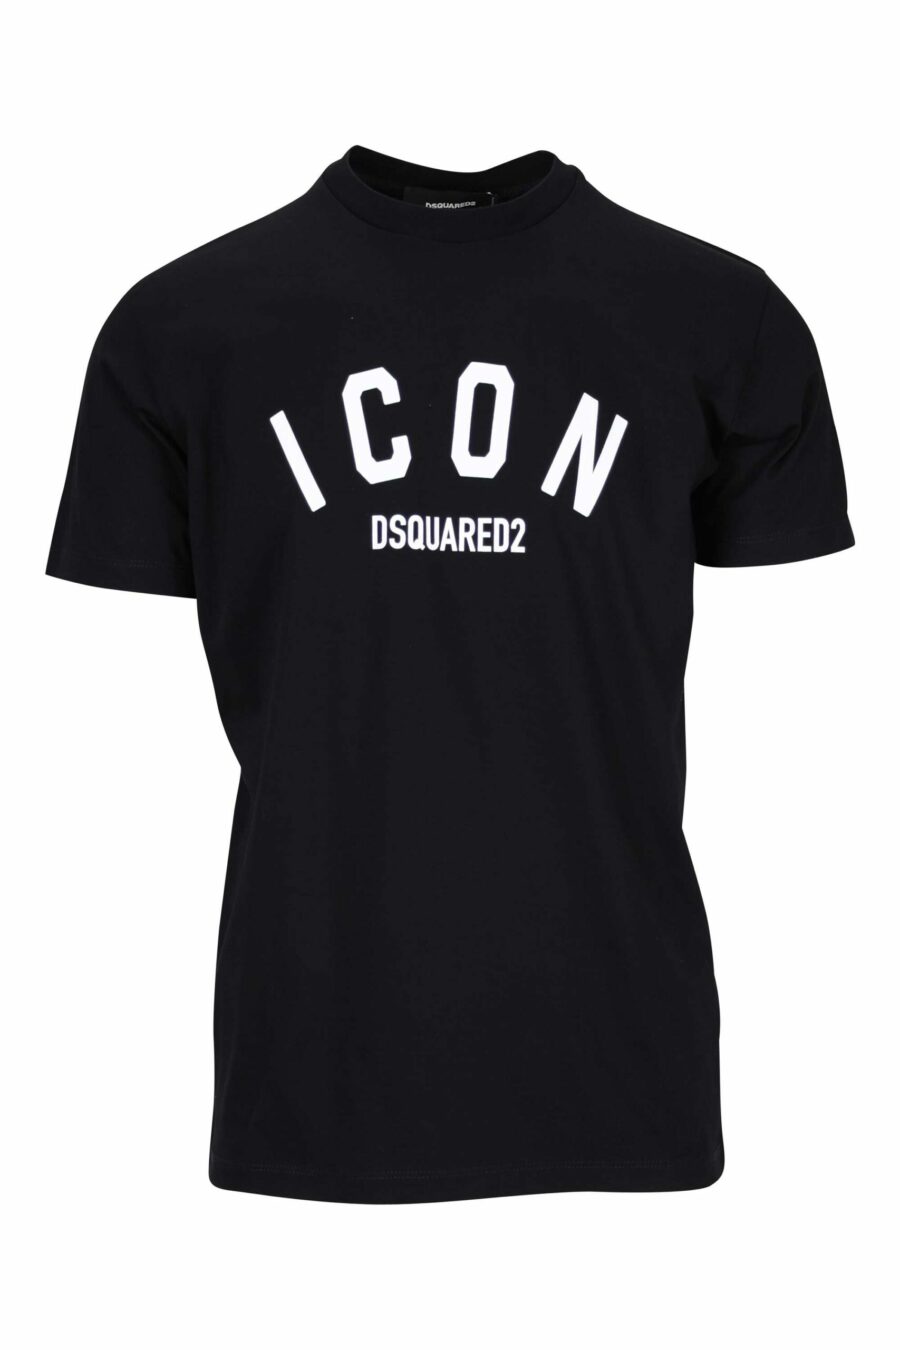 Camiseta negra con logo "icon" doblado - 8054148400989 scaled